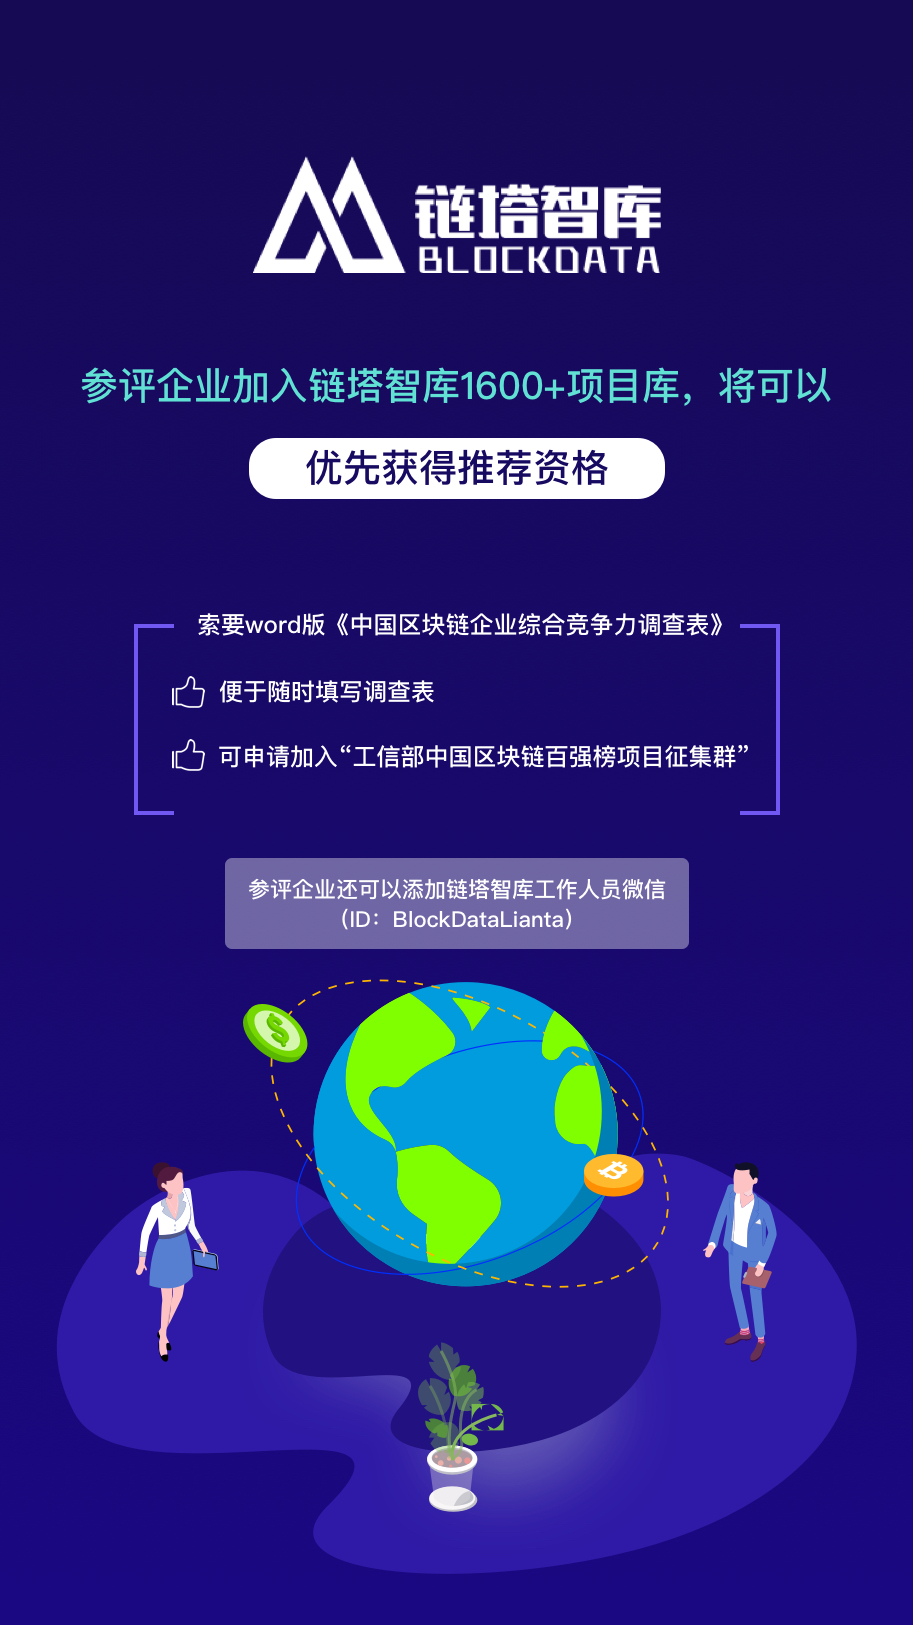 链塔智库将与工信部赛迪区块链研究院联合发布中国区块链百强榜